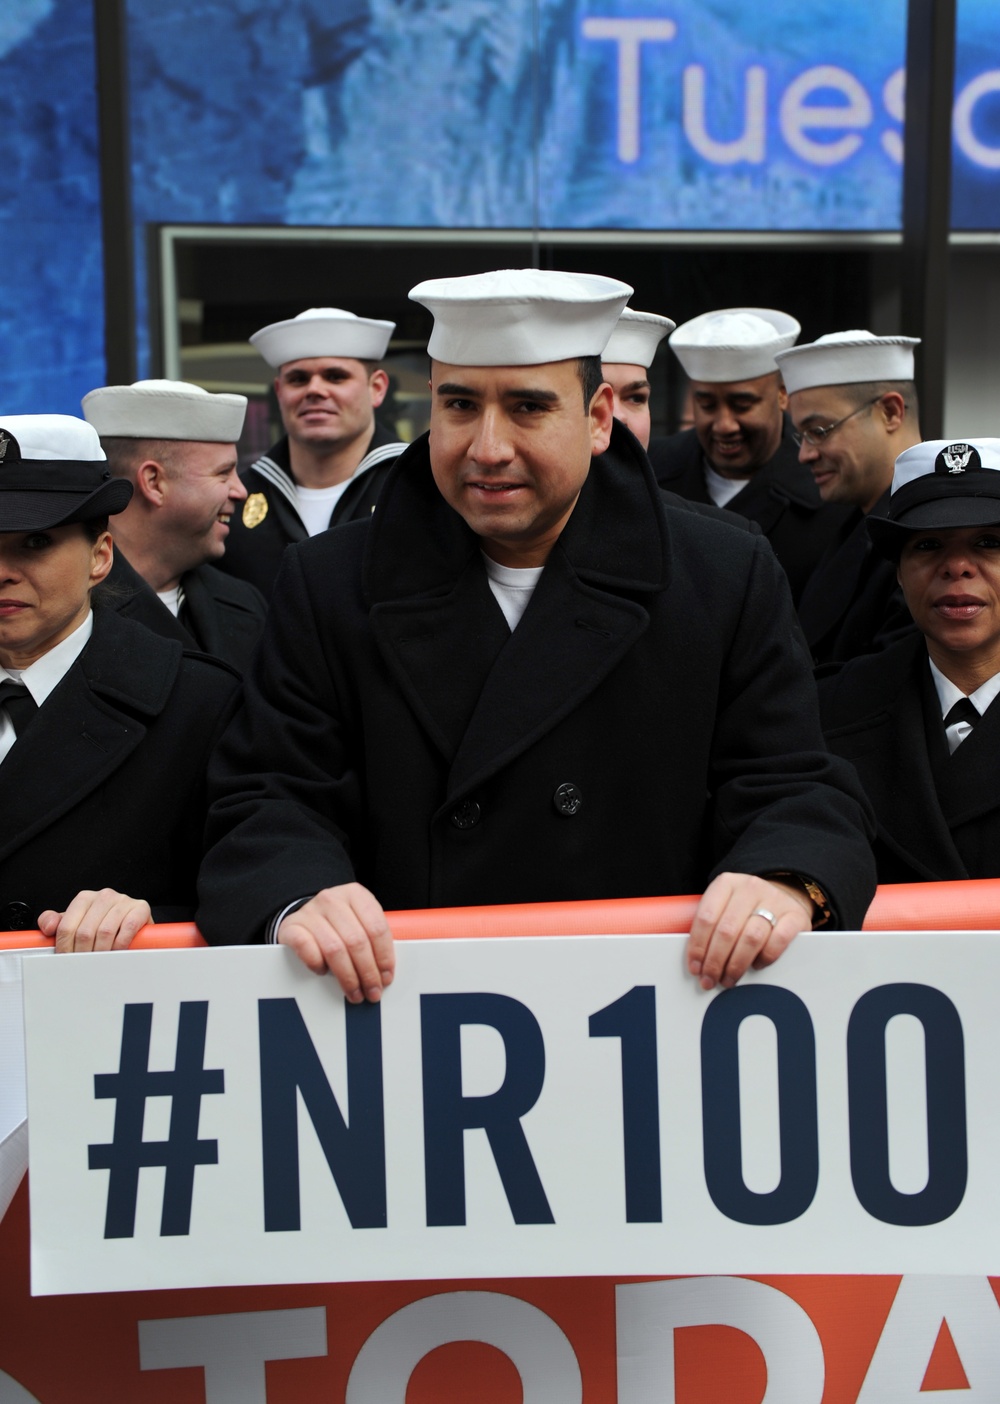 Navy Reserve centennial